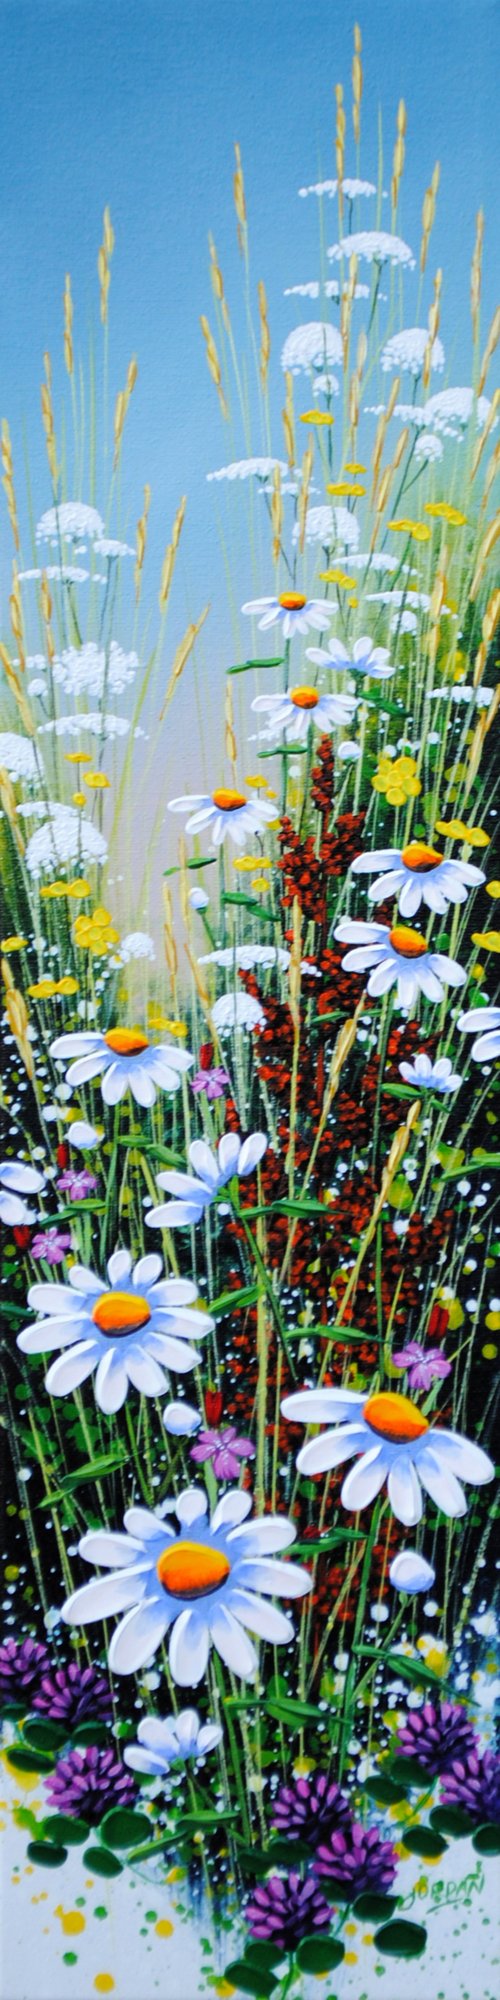 Wildflowers Ii by Jordan Hicks